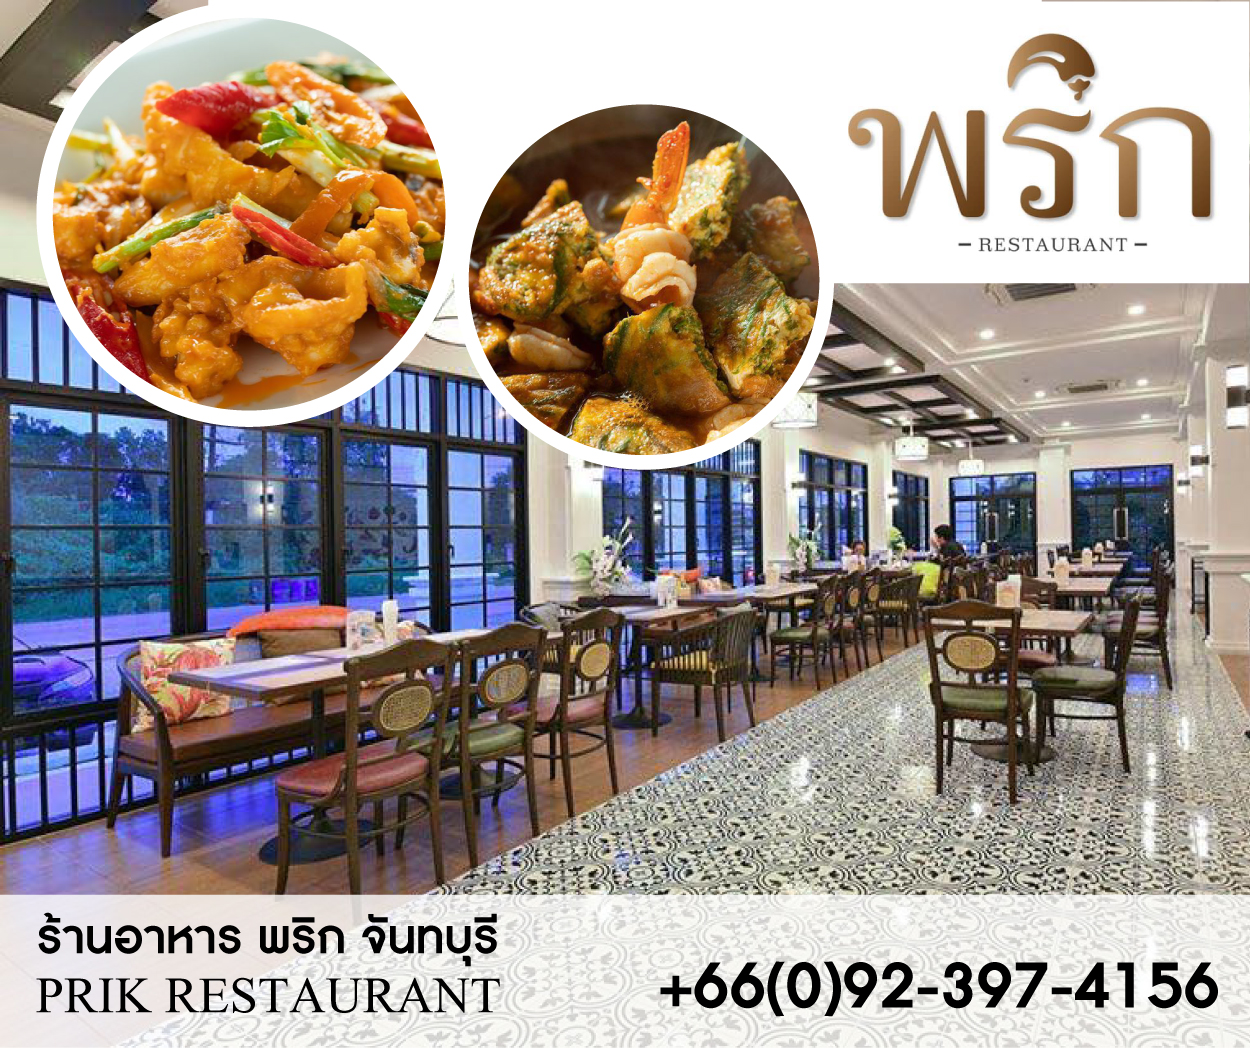 Chaanburi Boutique Resort Chanthaburi (Prik)